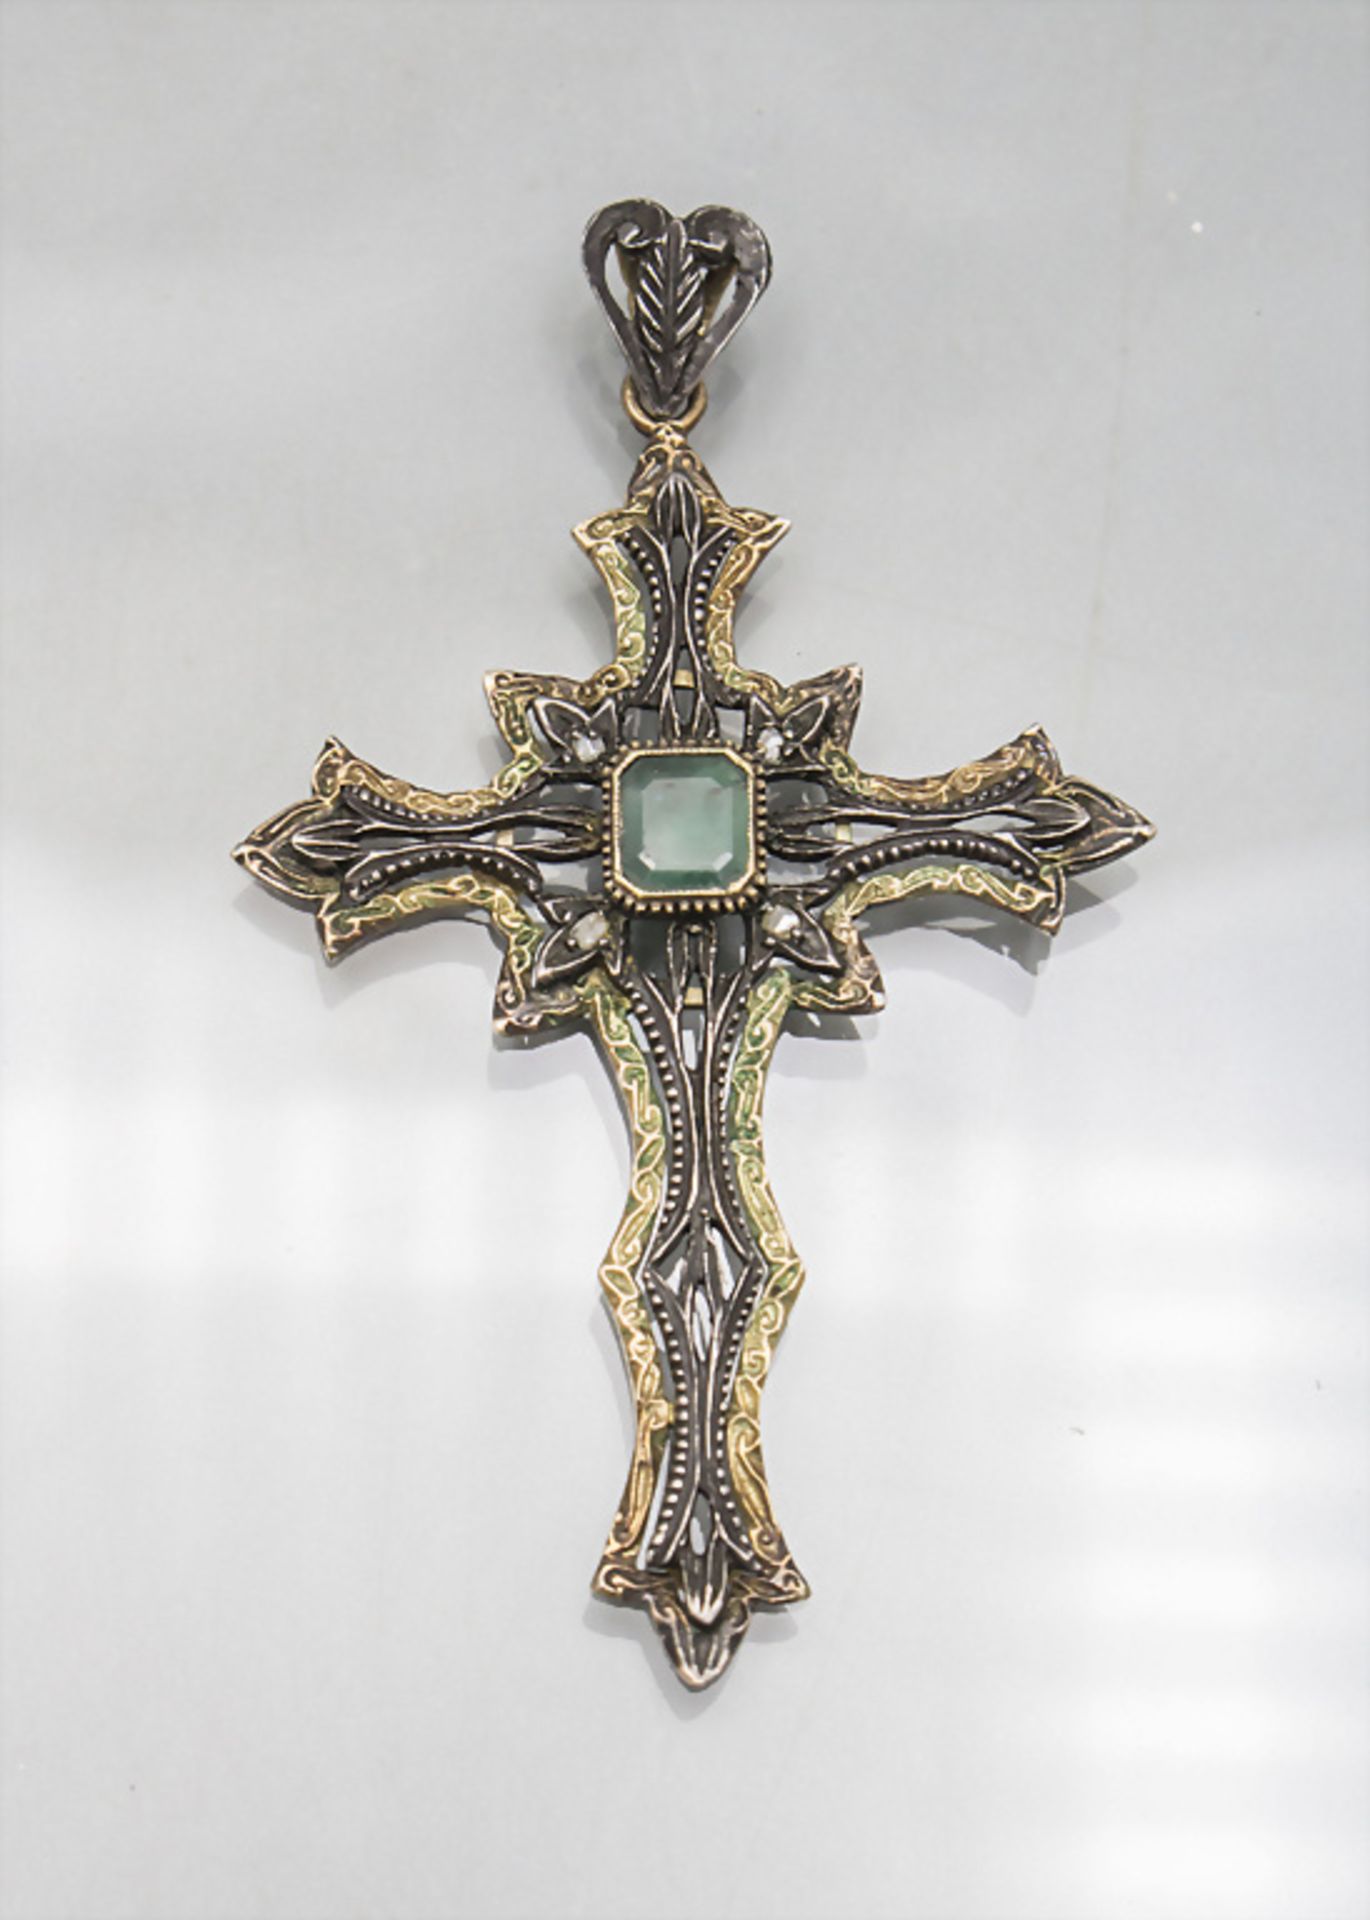 Kreuzanhänger / A cross pendant, Italien, 19. Jh.